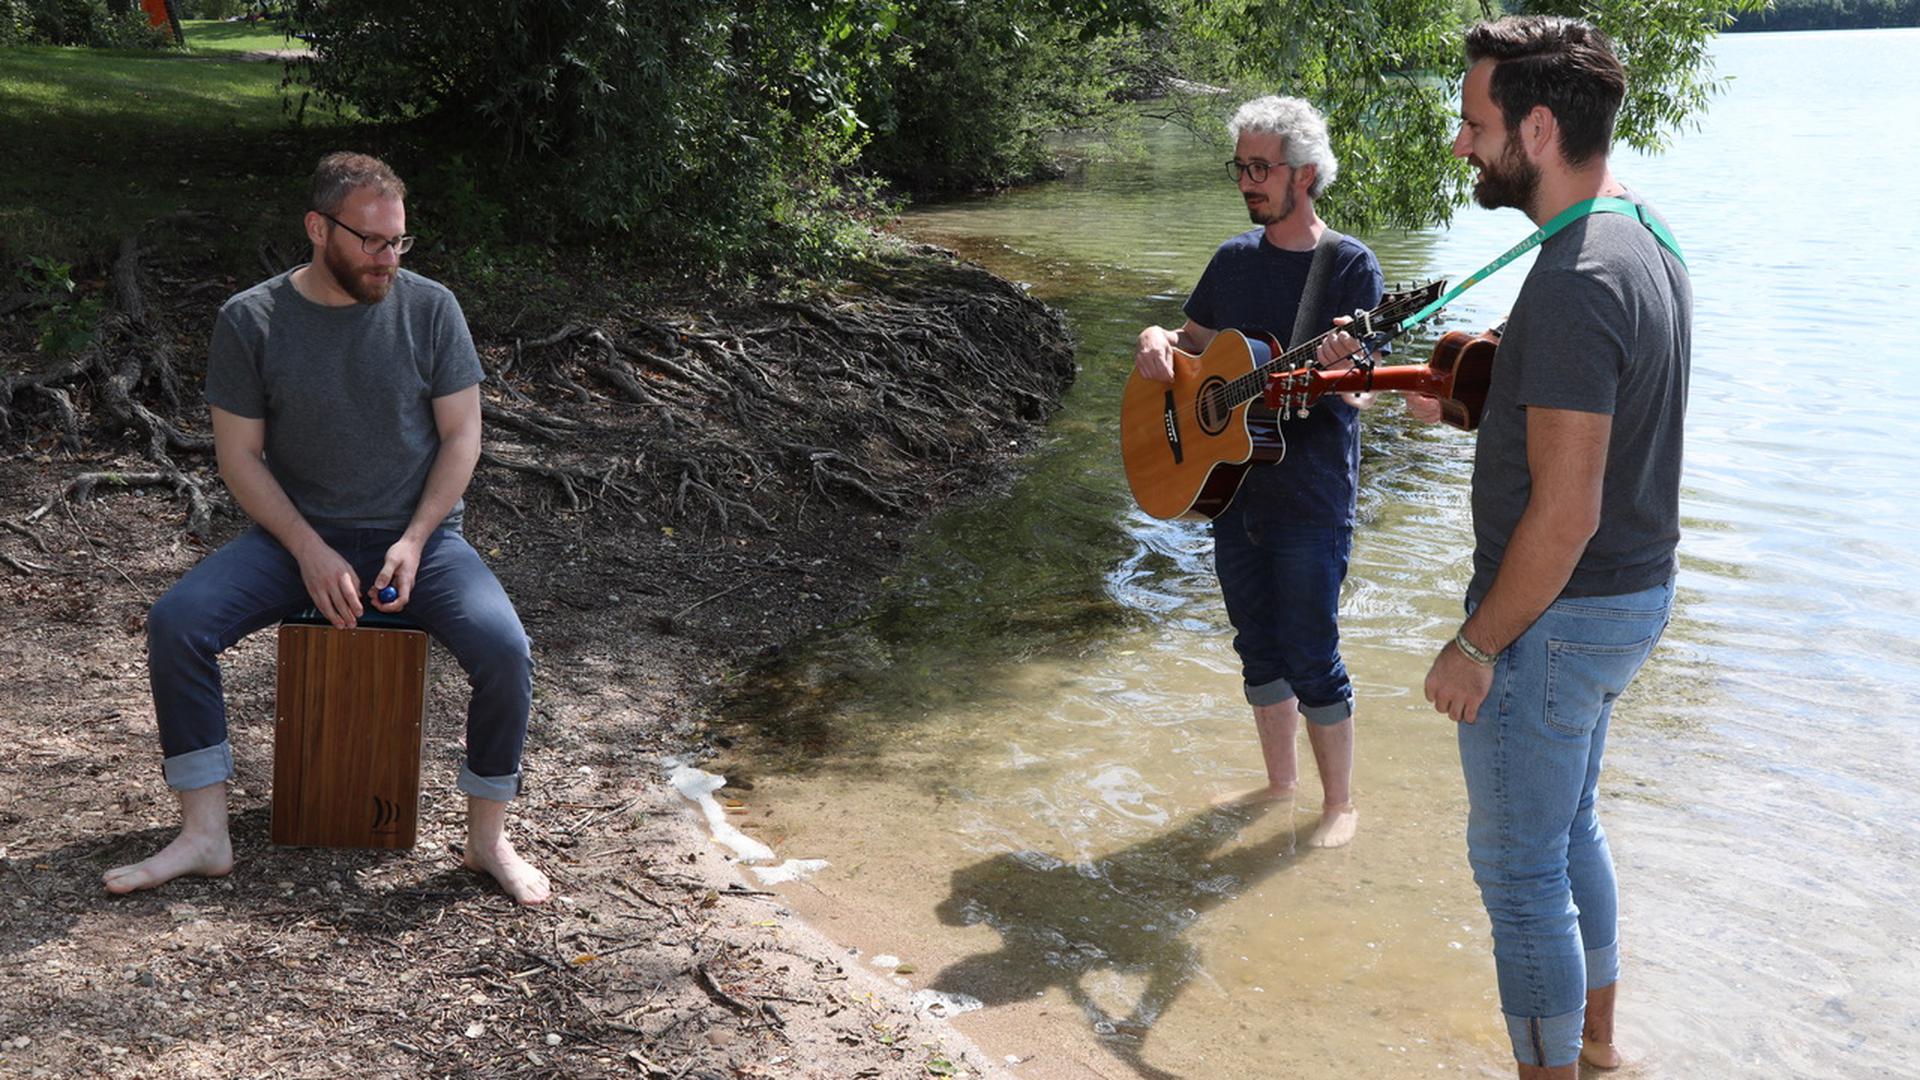 Eine Herausforderung sucht die Bruchsaler Uptown Band zum 20. Geburtstag: Sie erkundet den Bodensee und finanziert ihre Tour mit Straßenmusik. 